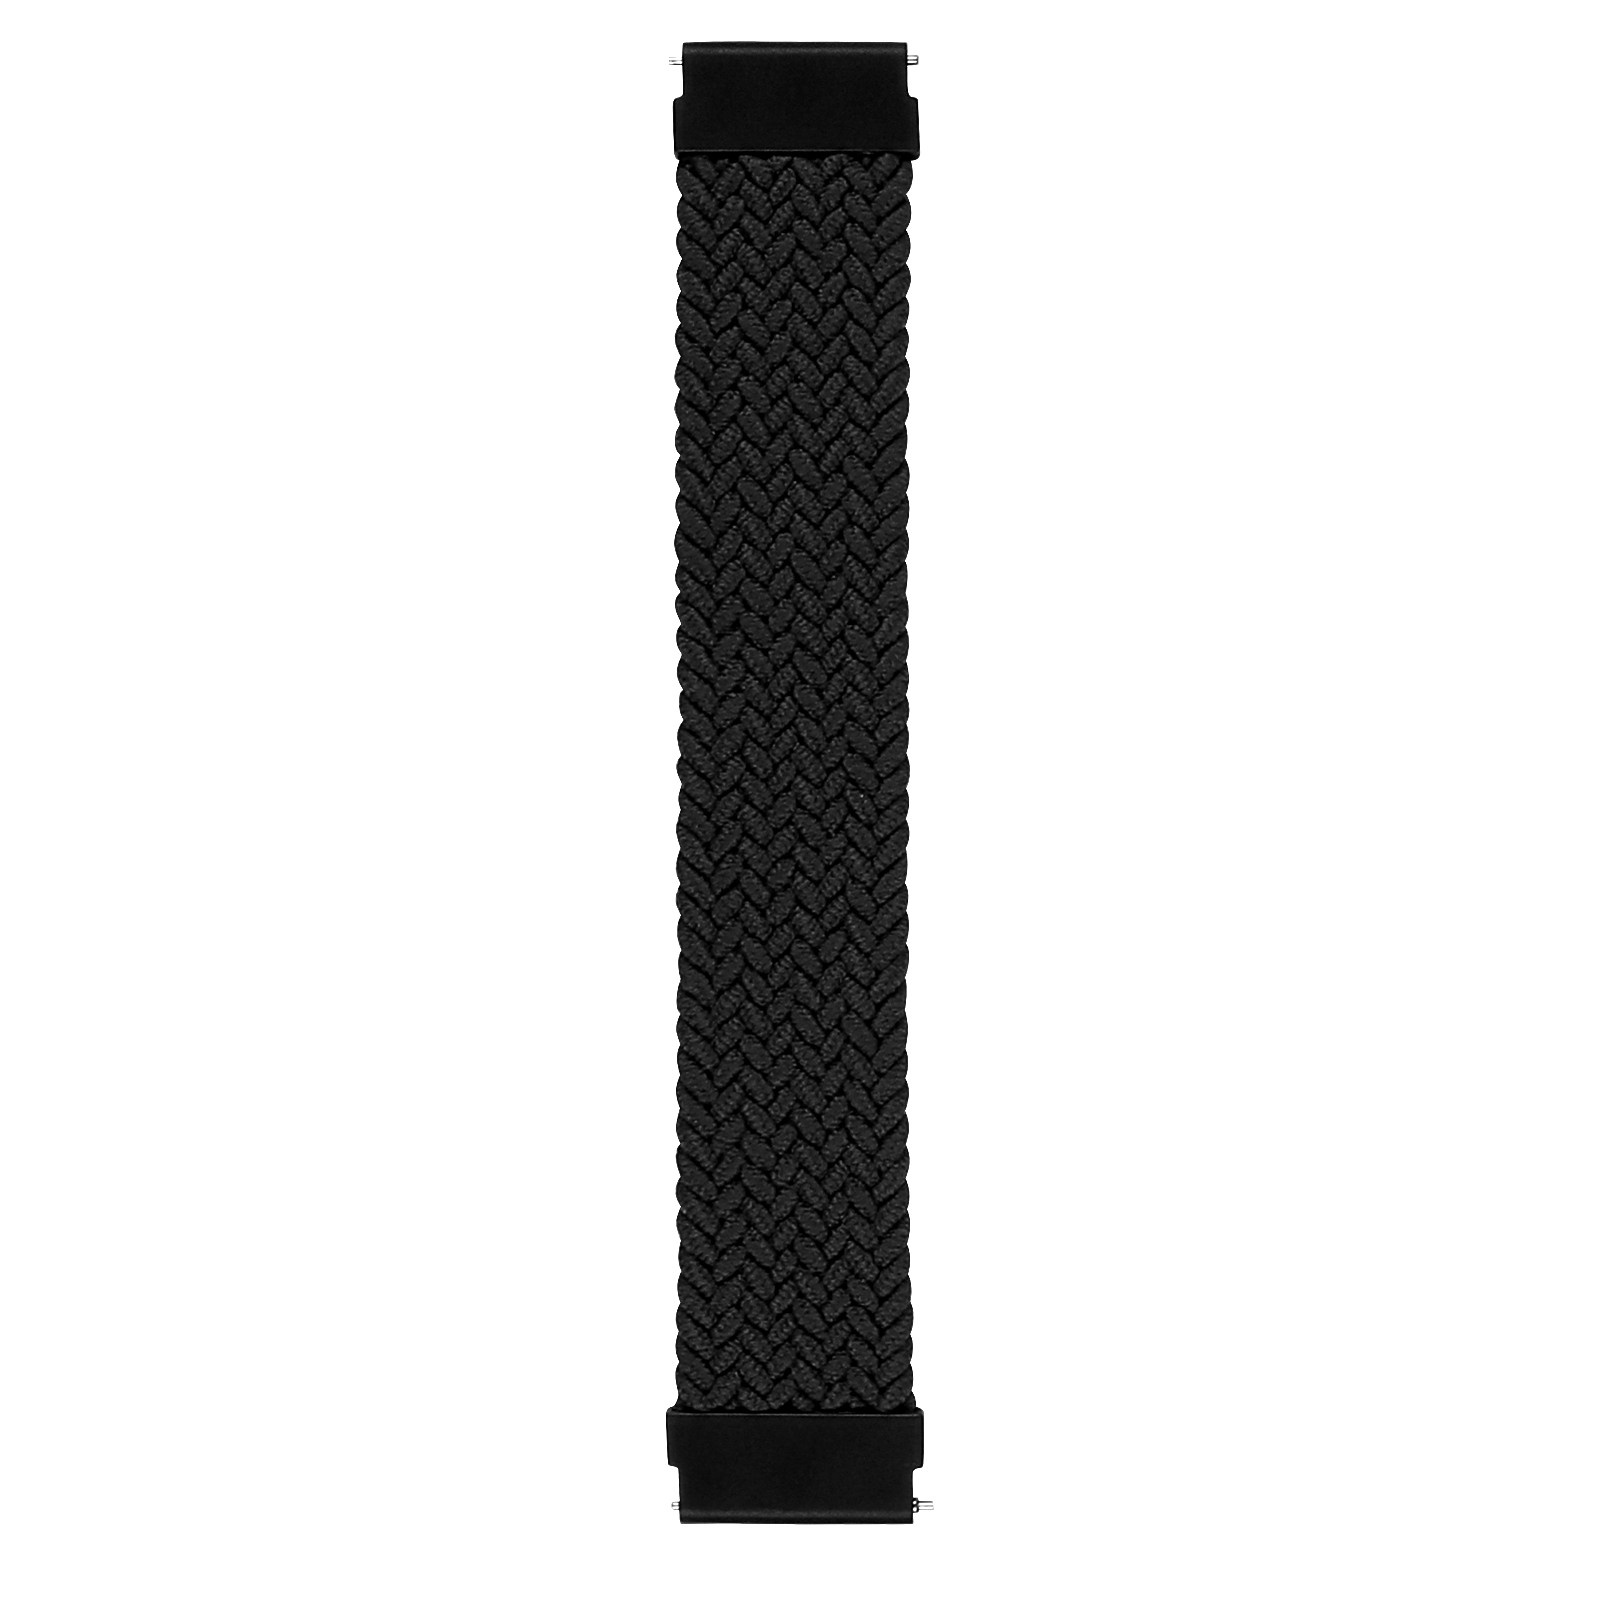 Cinturino Solo intrecciato in nylon per Samsung Galaxy Watch - nero